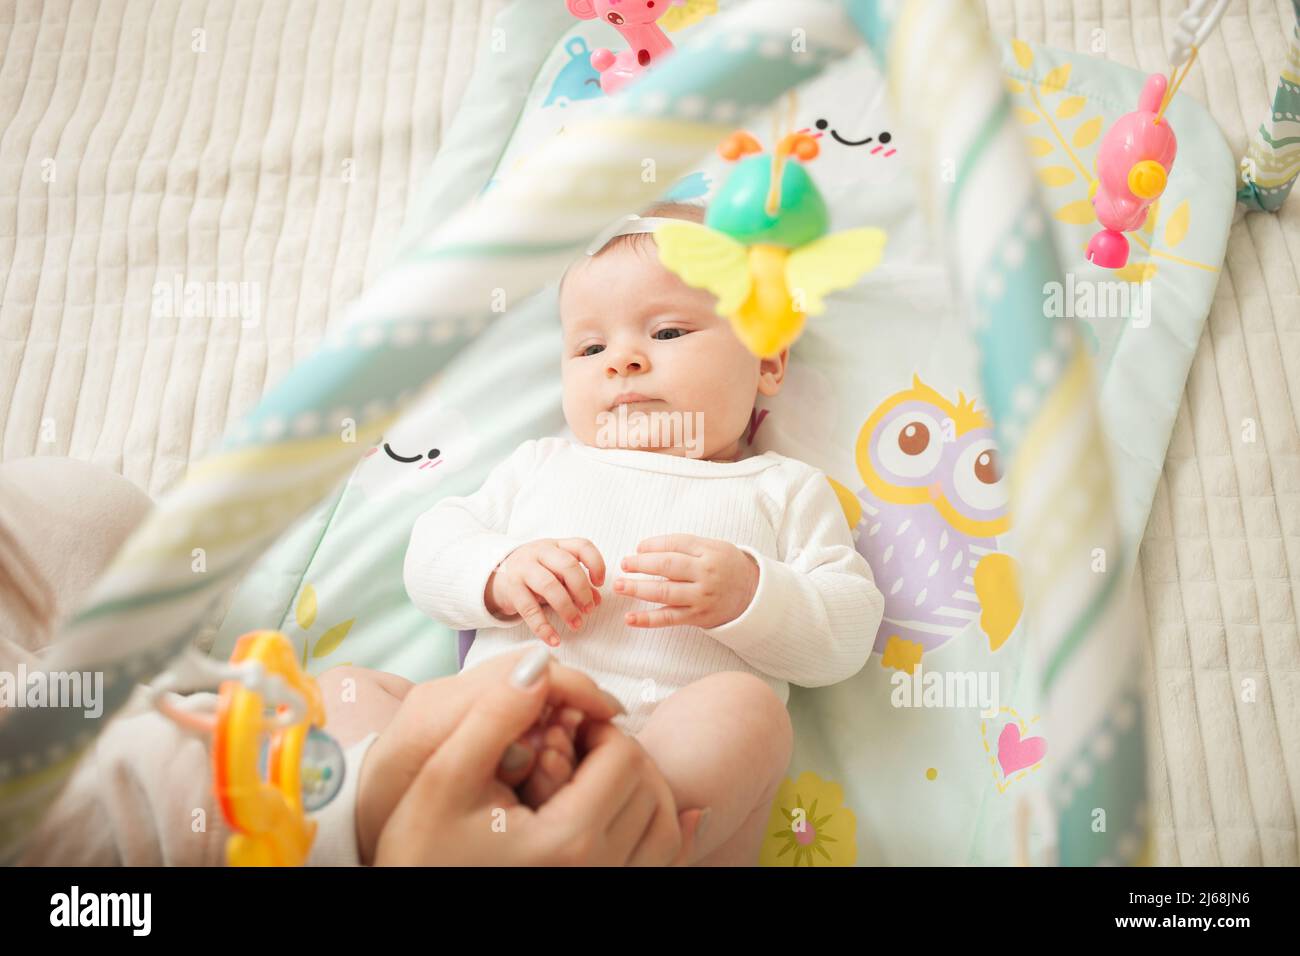 il bambino si trova sul letto, giocattoli appesi, materassino del bambino, ragazza neonata. sviluppante, guardando i giocattoli soddisfatti Foto Stock